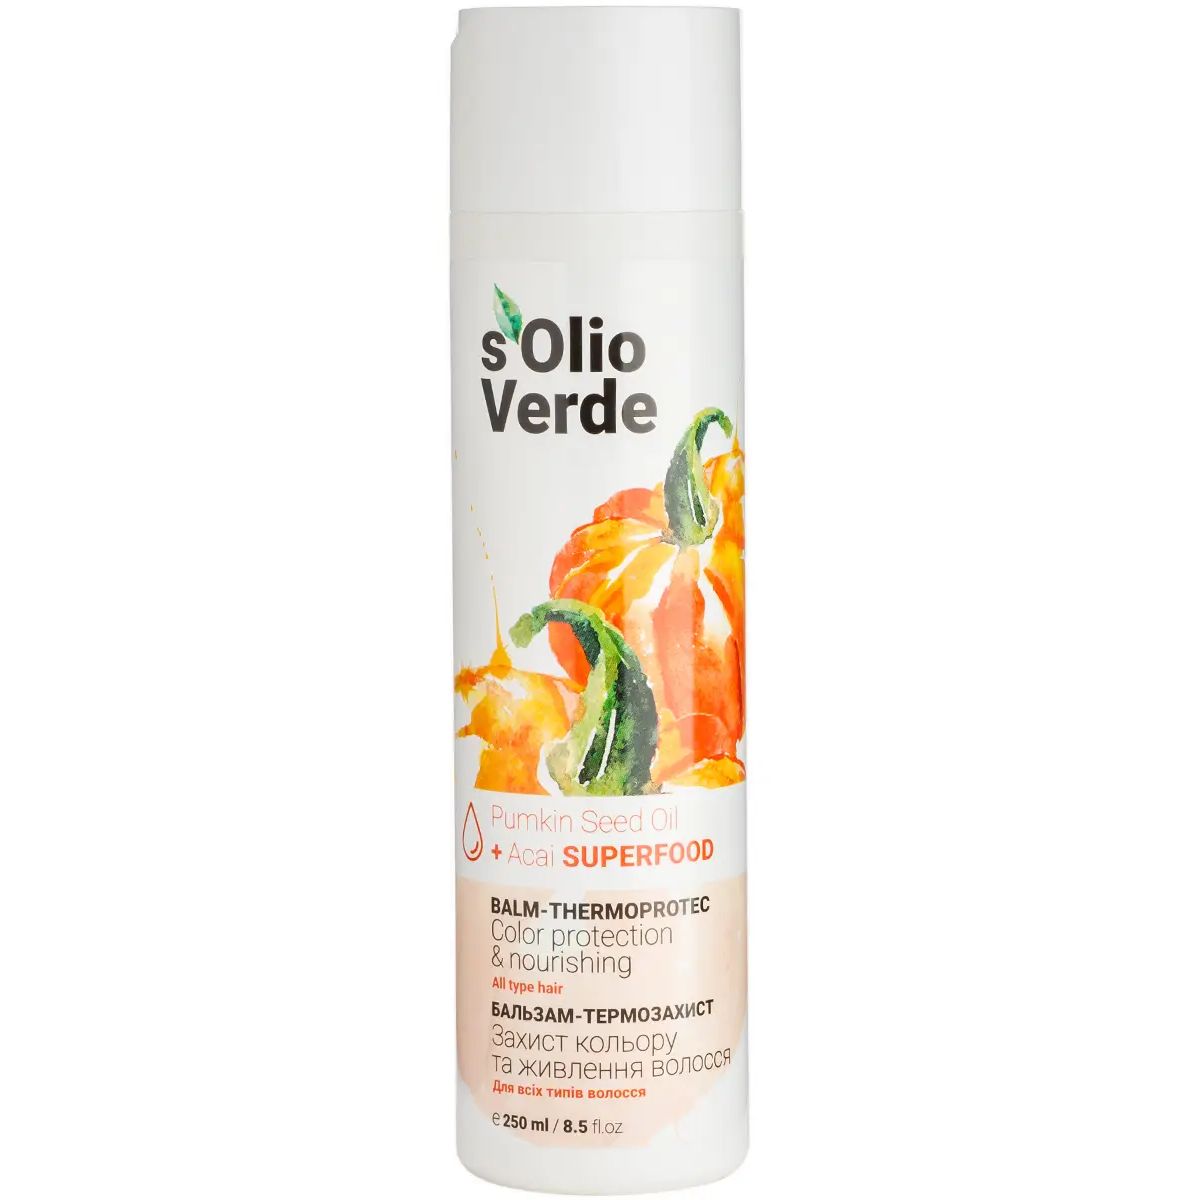 Бальзам-термозахист S'olio Verde Pumpkin Seed Oil для всіх типів волосся 250 мл - фото 1